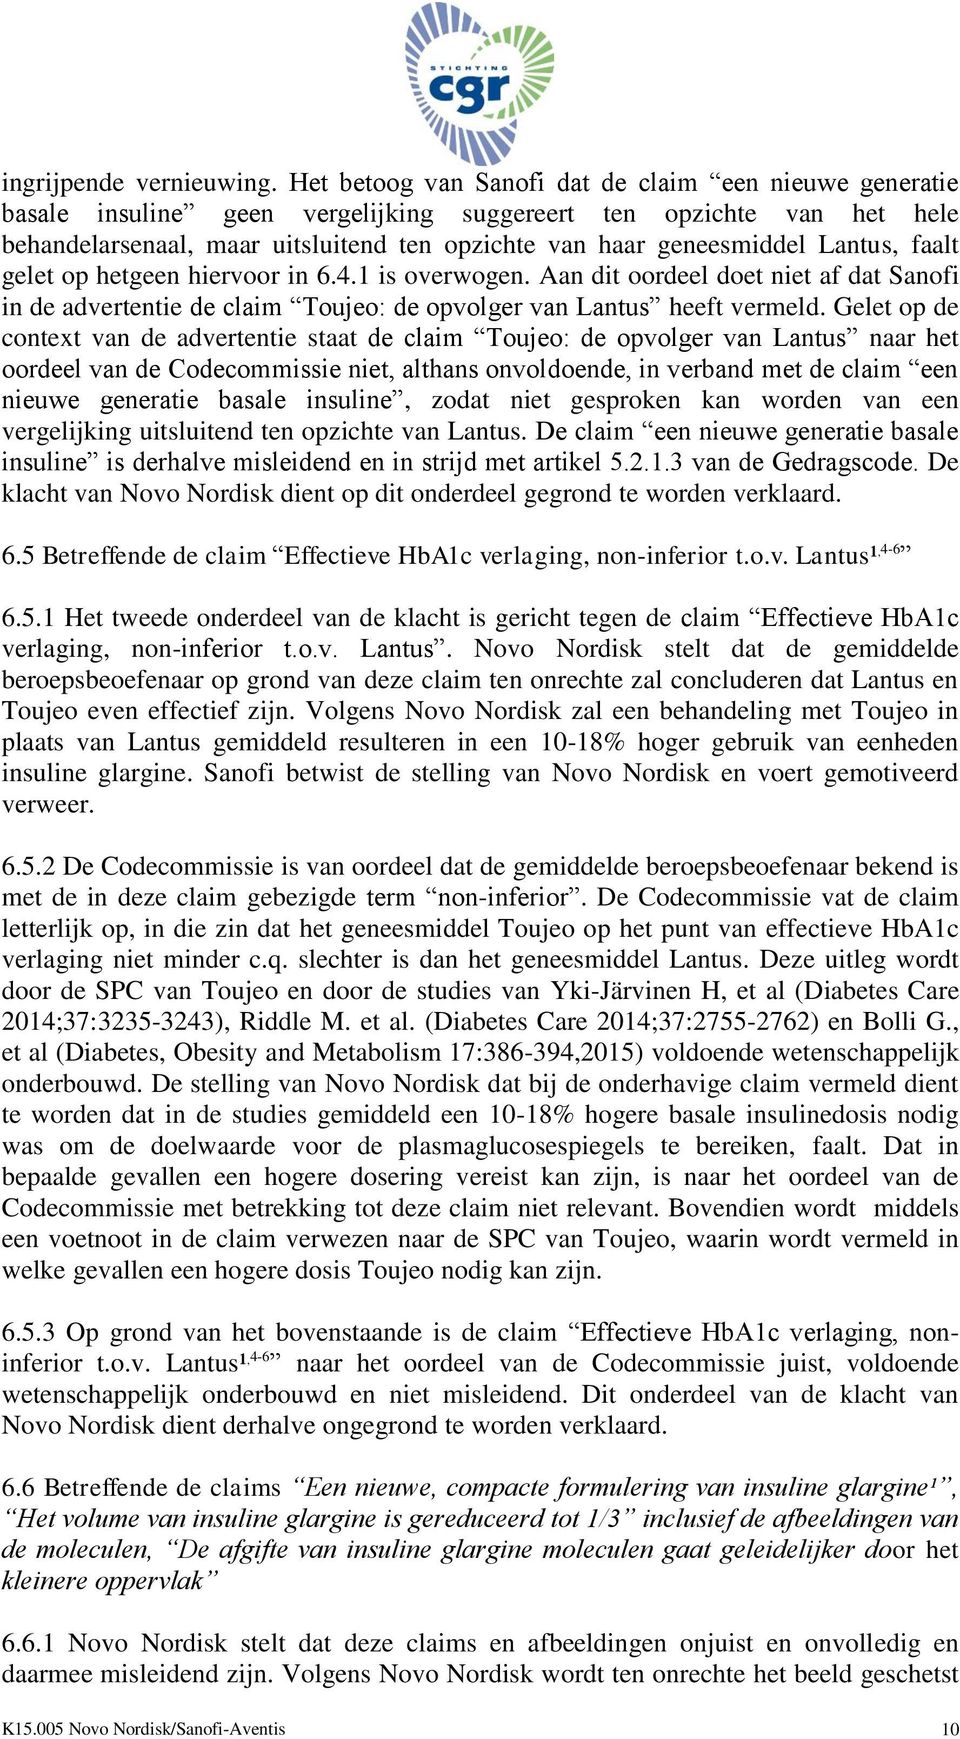 Lantus, faalt gelet op hetgeen hiervoor in 6.4.1 is overwogen. Aan dit oordeel doet niet af dat Sanofi in de advertentie de claim Toujeo: de opvolger van Lantus heeft vermeld.